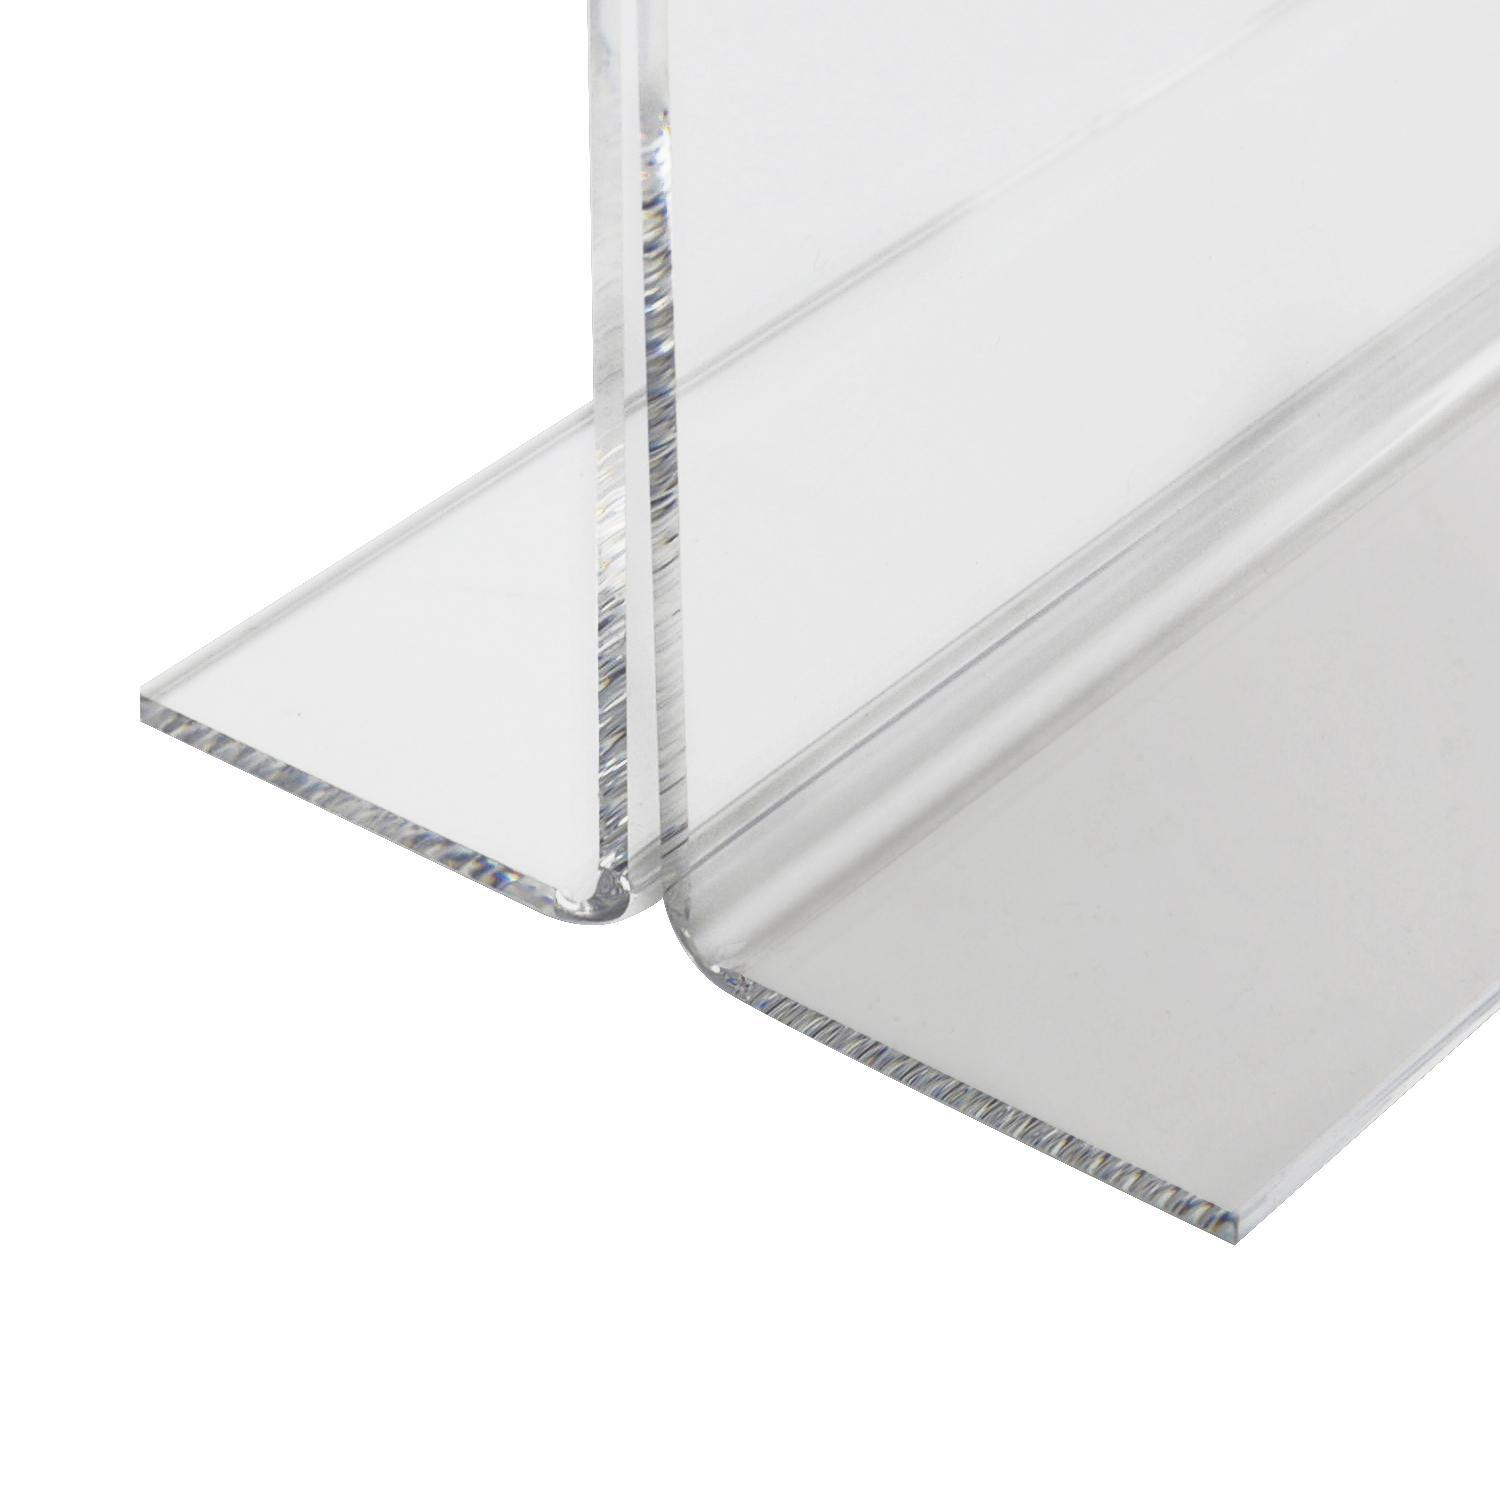 Tischaufsteller oder Menükarte aus Acryl für DIN A4 von HMF mit den Maßen 21.5 x 32 x 10.5 cm